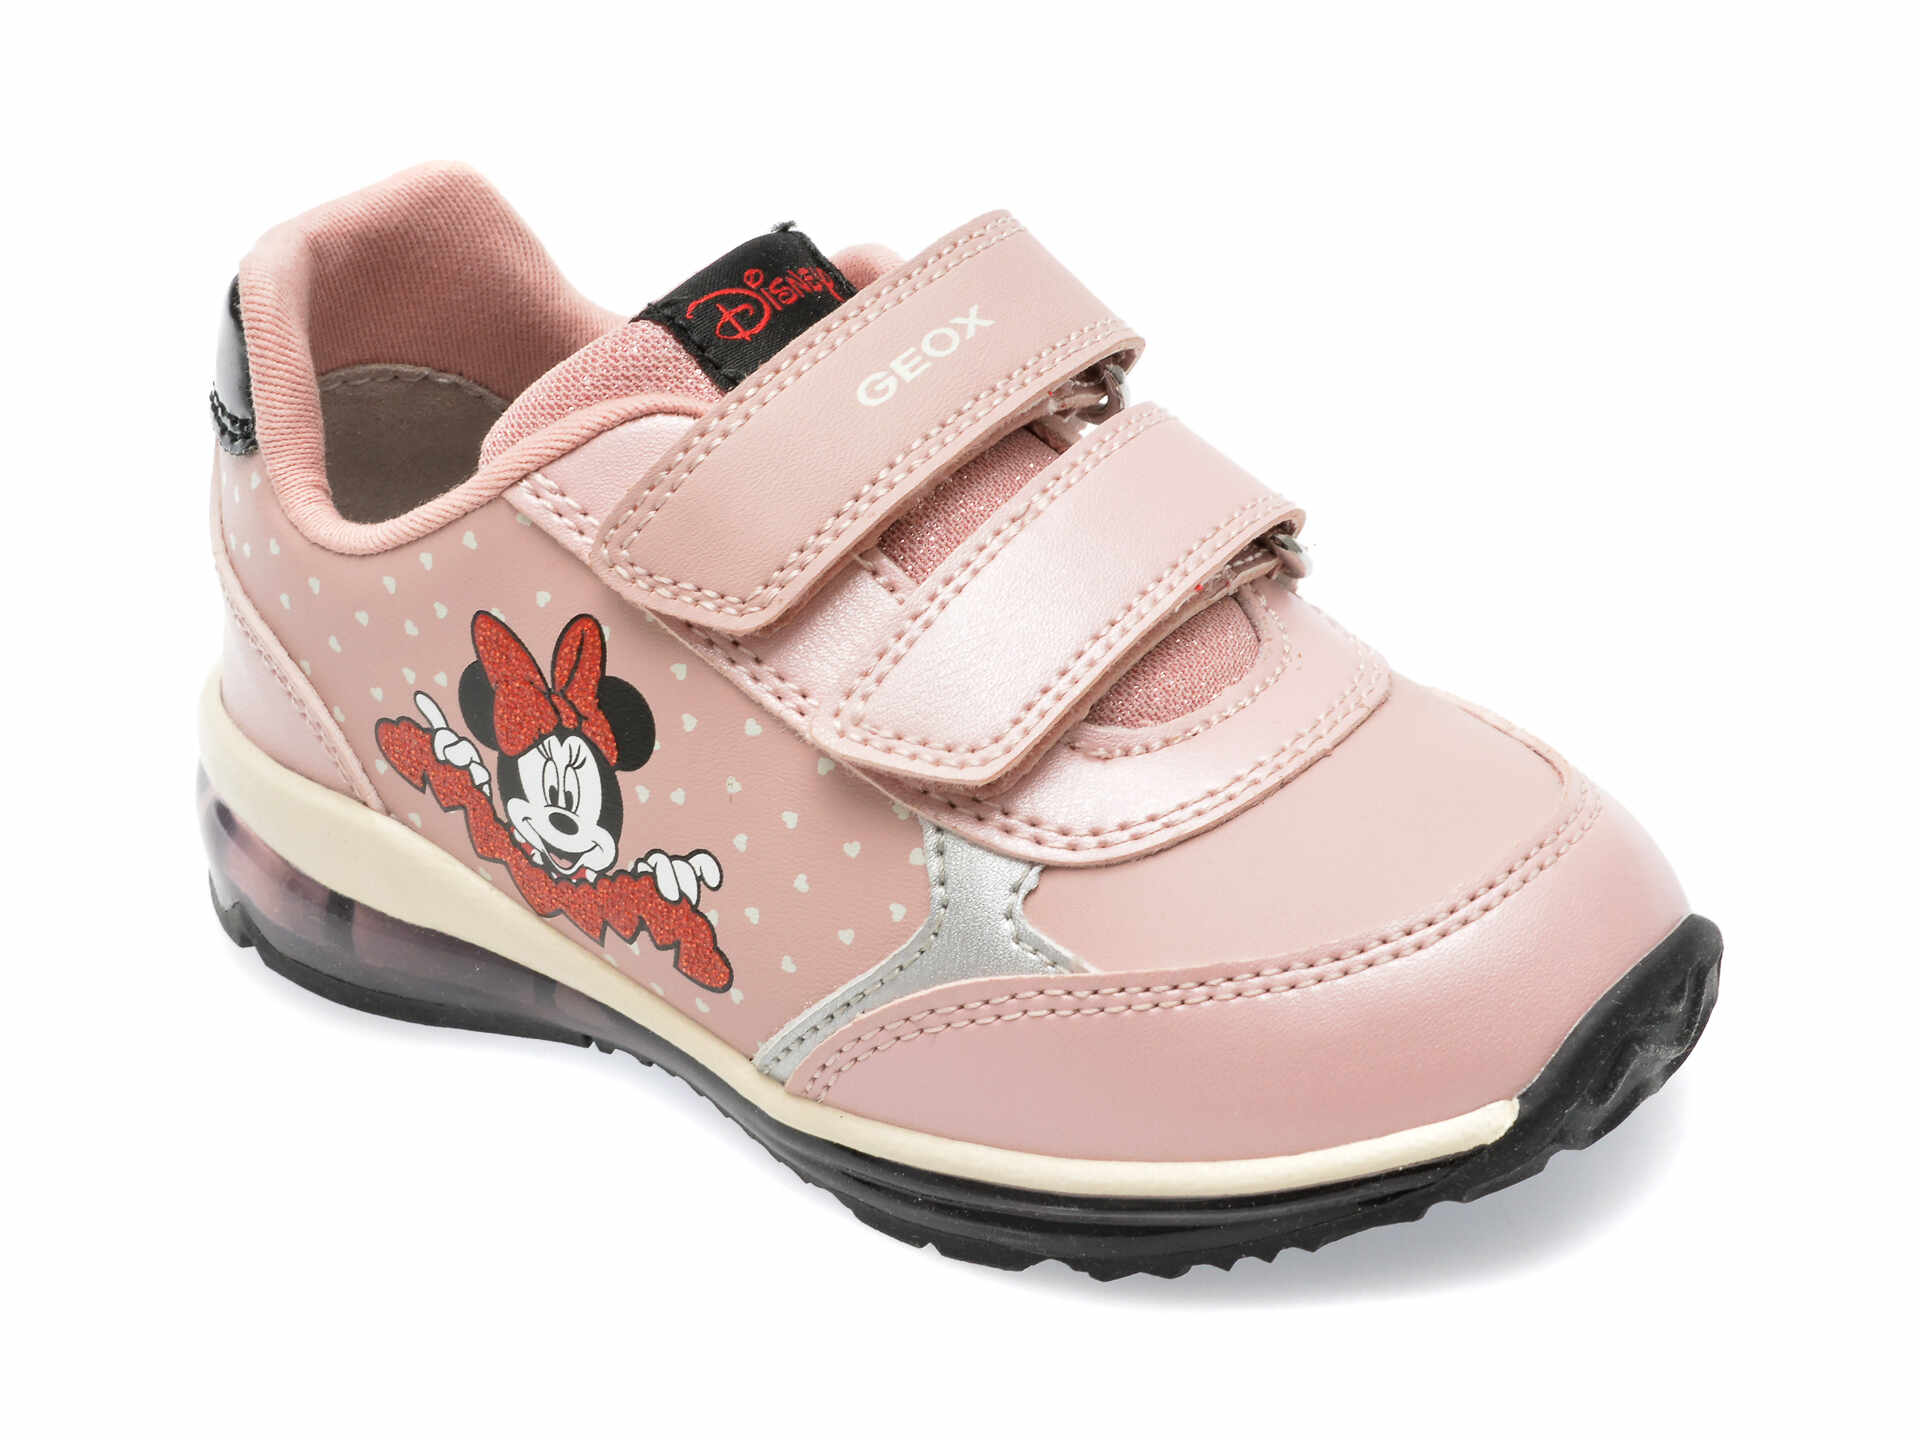 Pantofi GEOX roz, B3685C, din piele ecologica